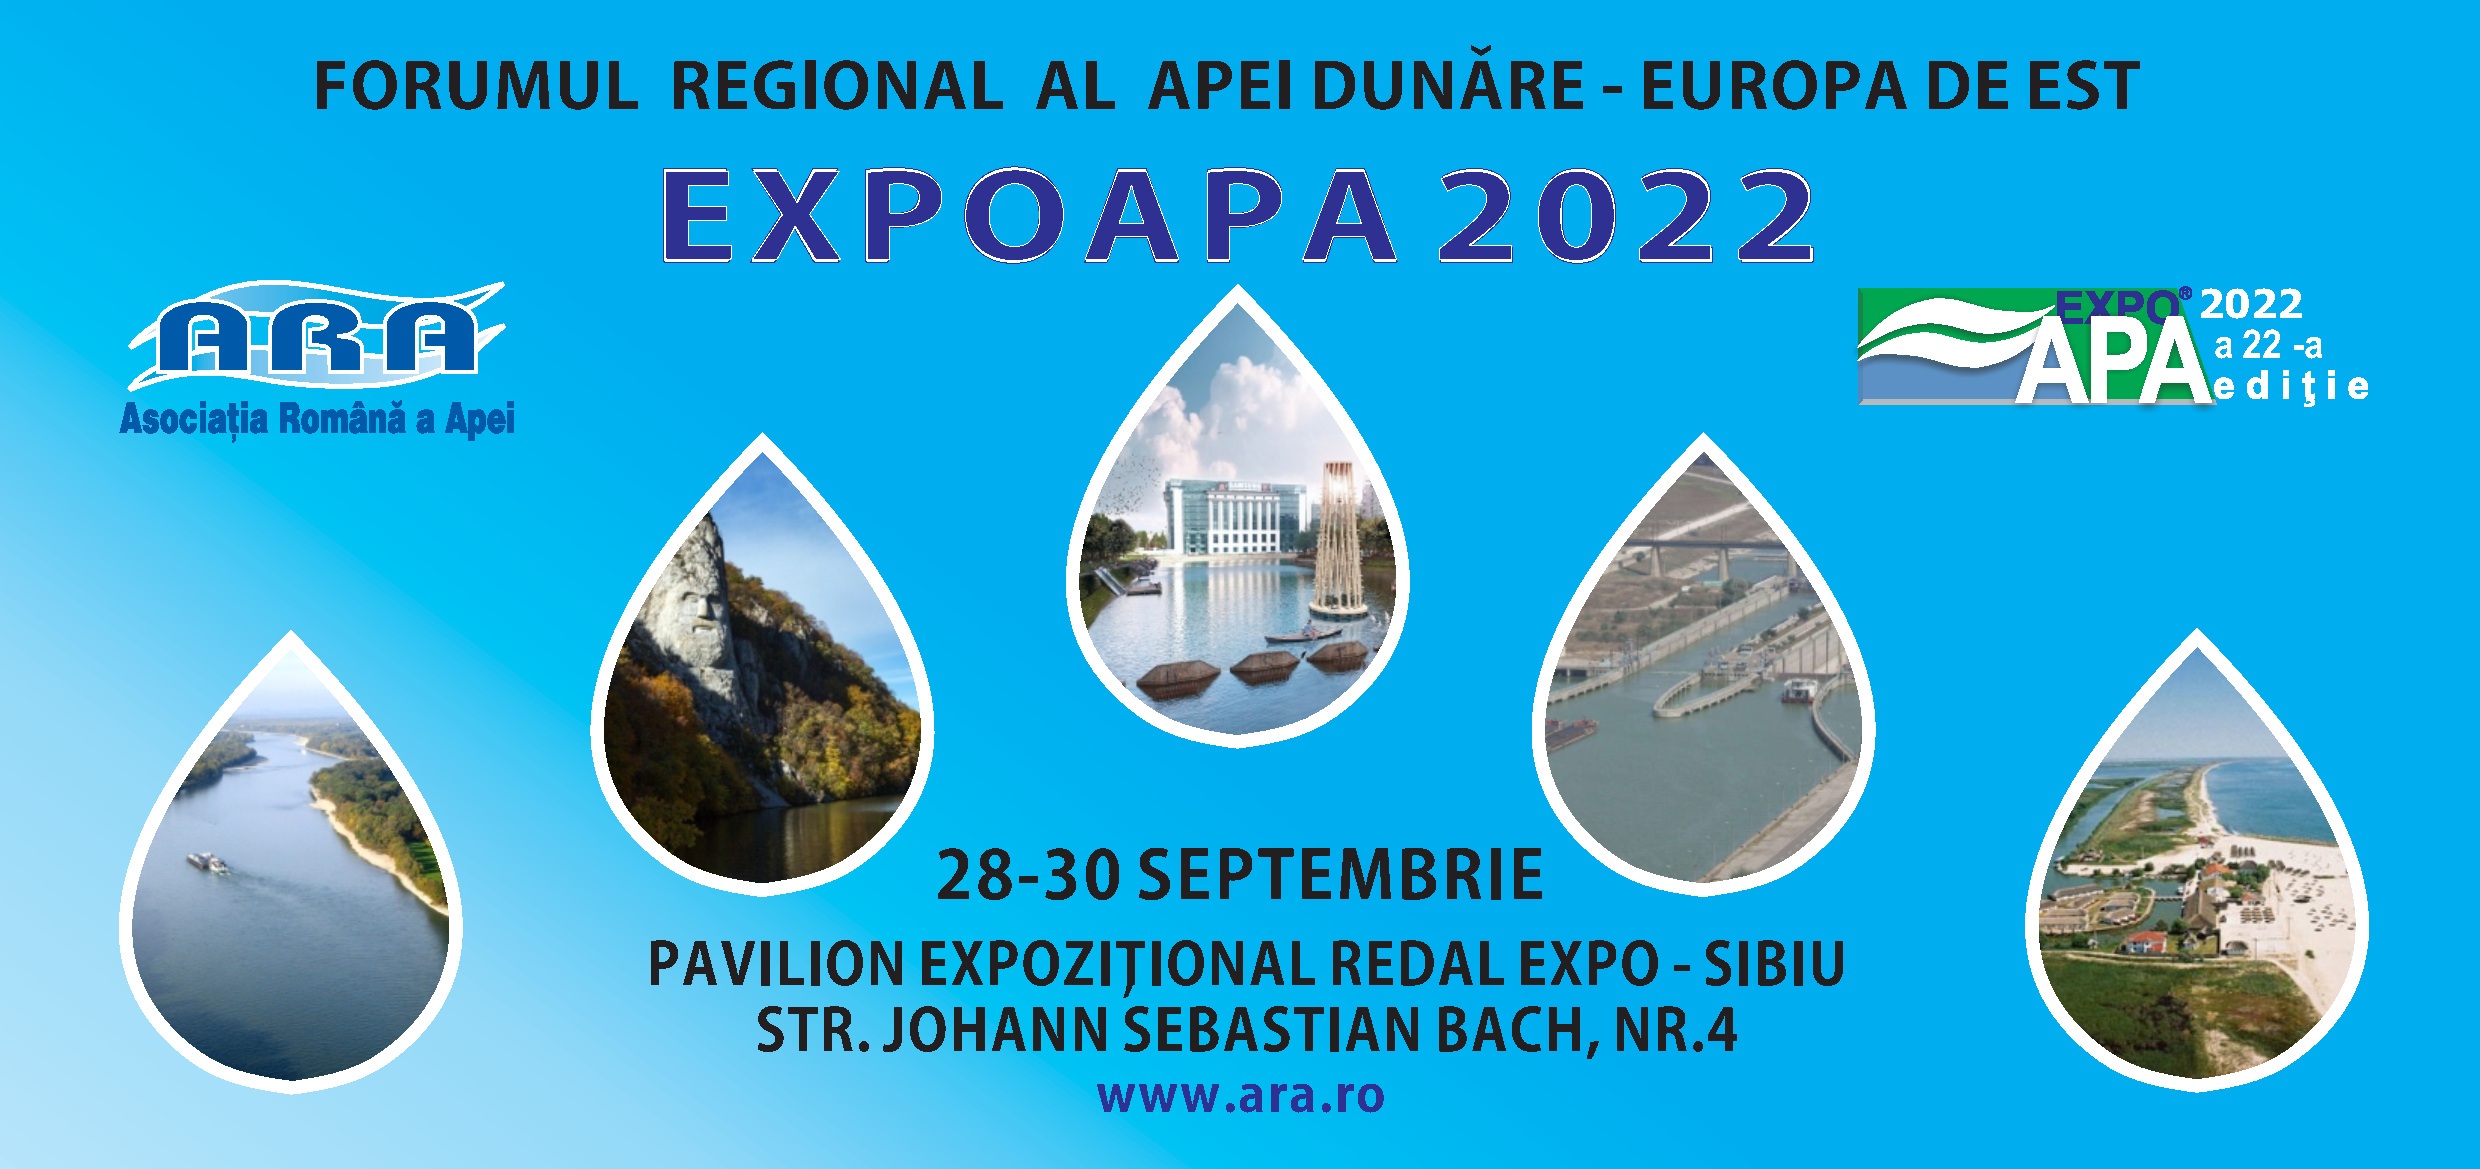 EXPOAPA 2022 - 28-30 septembrie: Forumului Regional al Apei “Dunăre-Europa de Est”